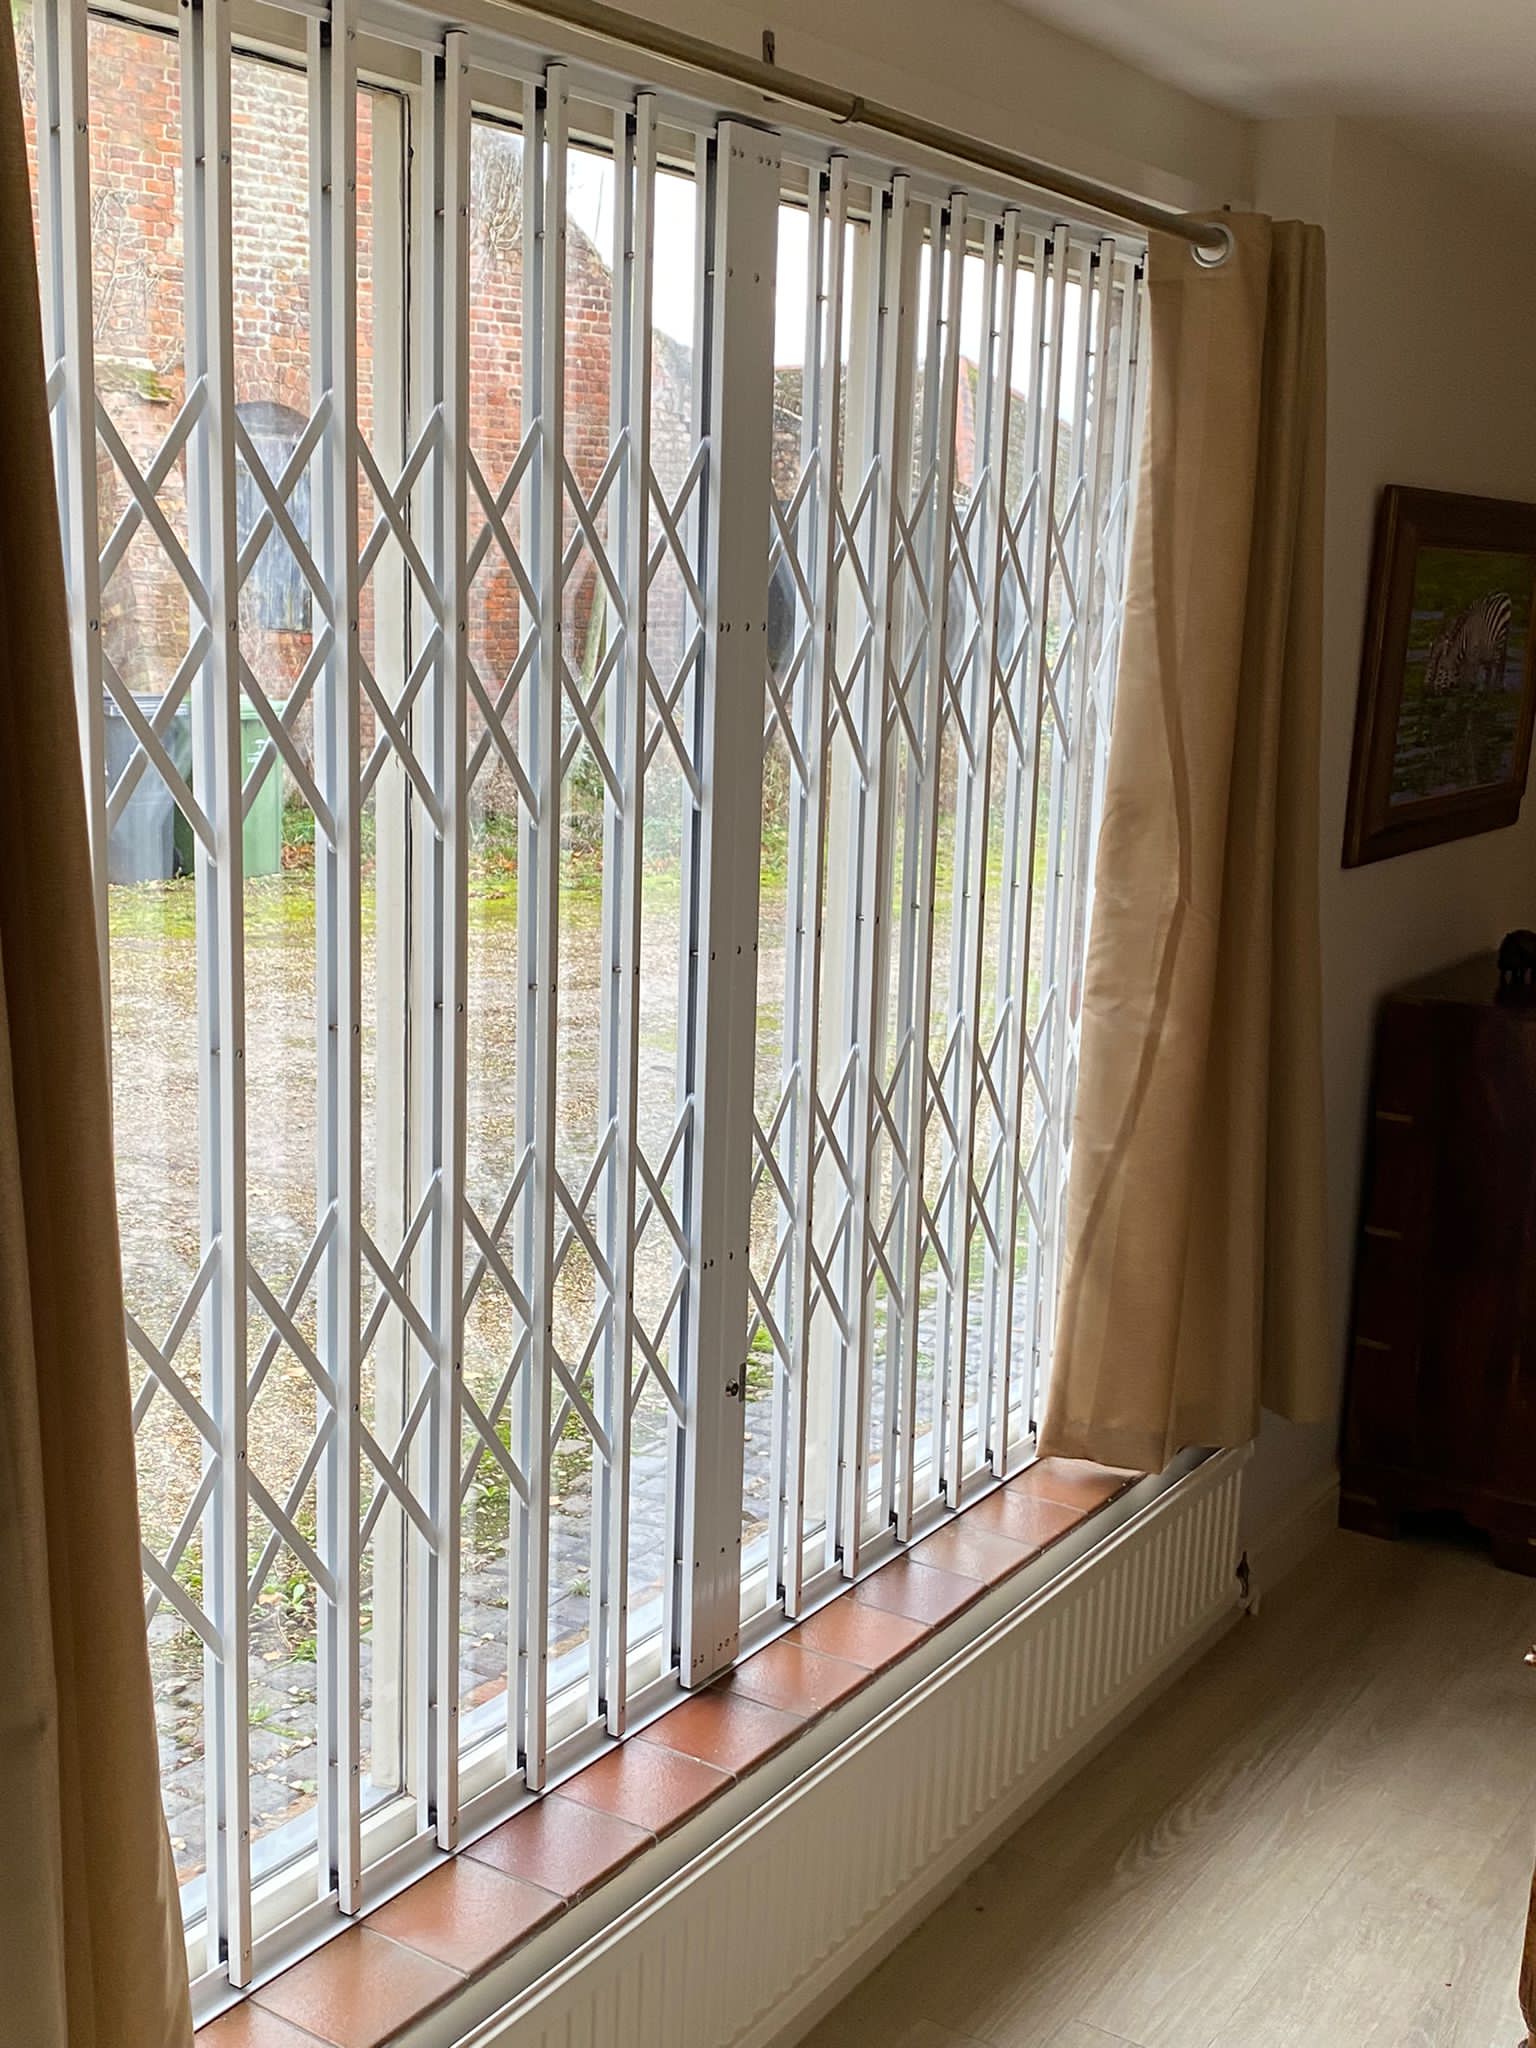 projektor Tolk Skære af Are window grilles effective? - Safeguard Security